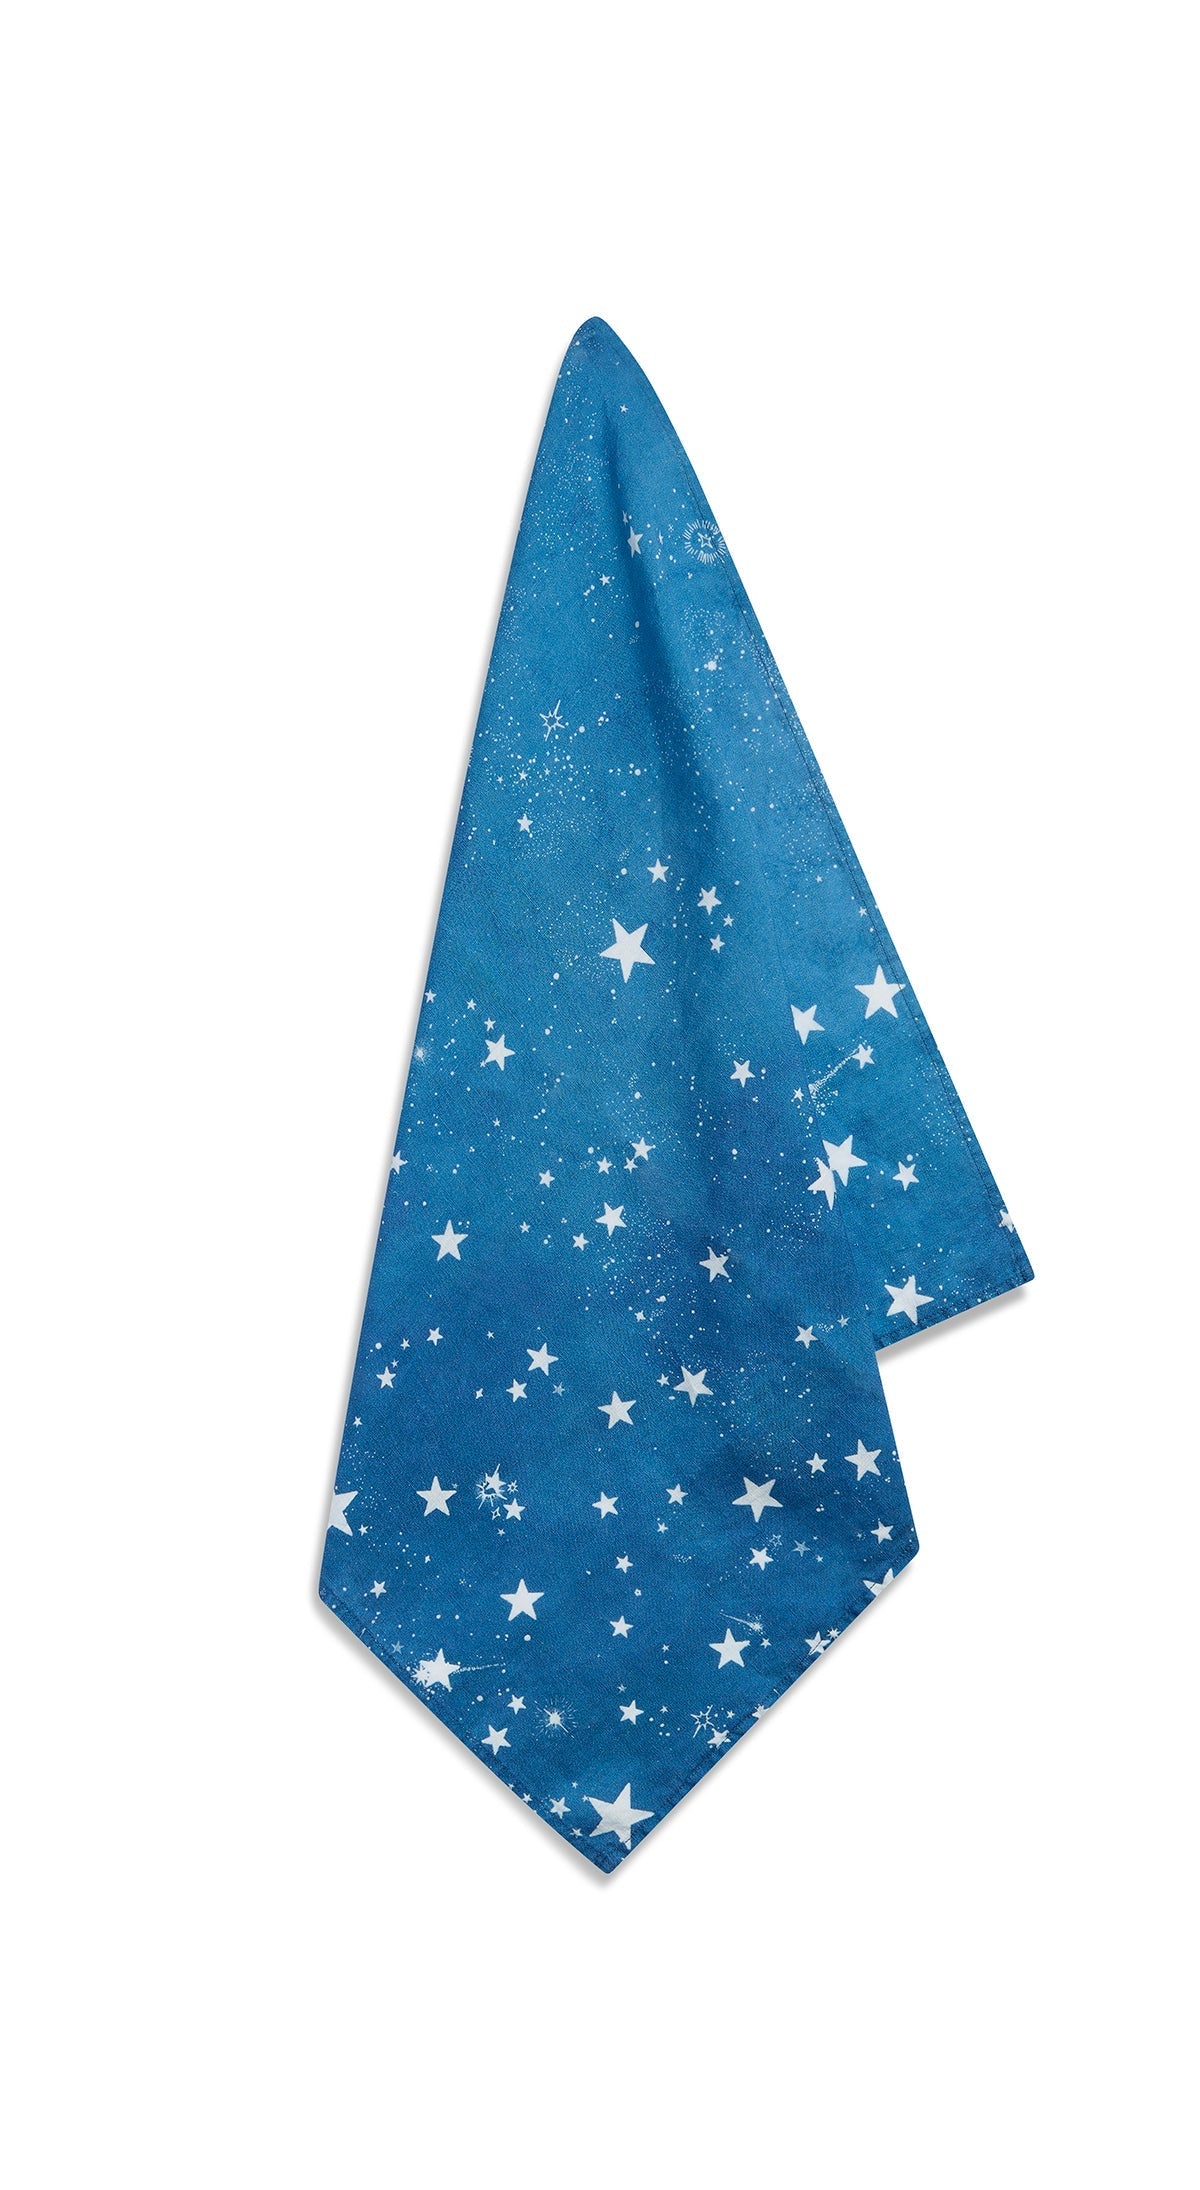 Celestial Stars Linen Napkin in Blue, 50x50cm